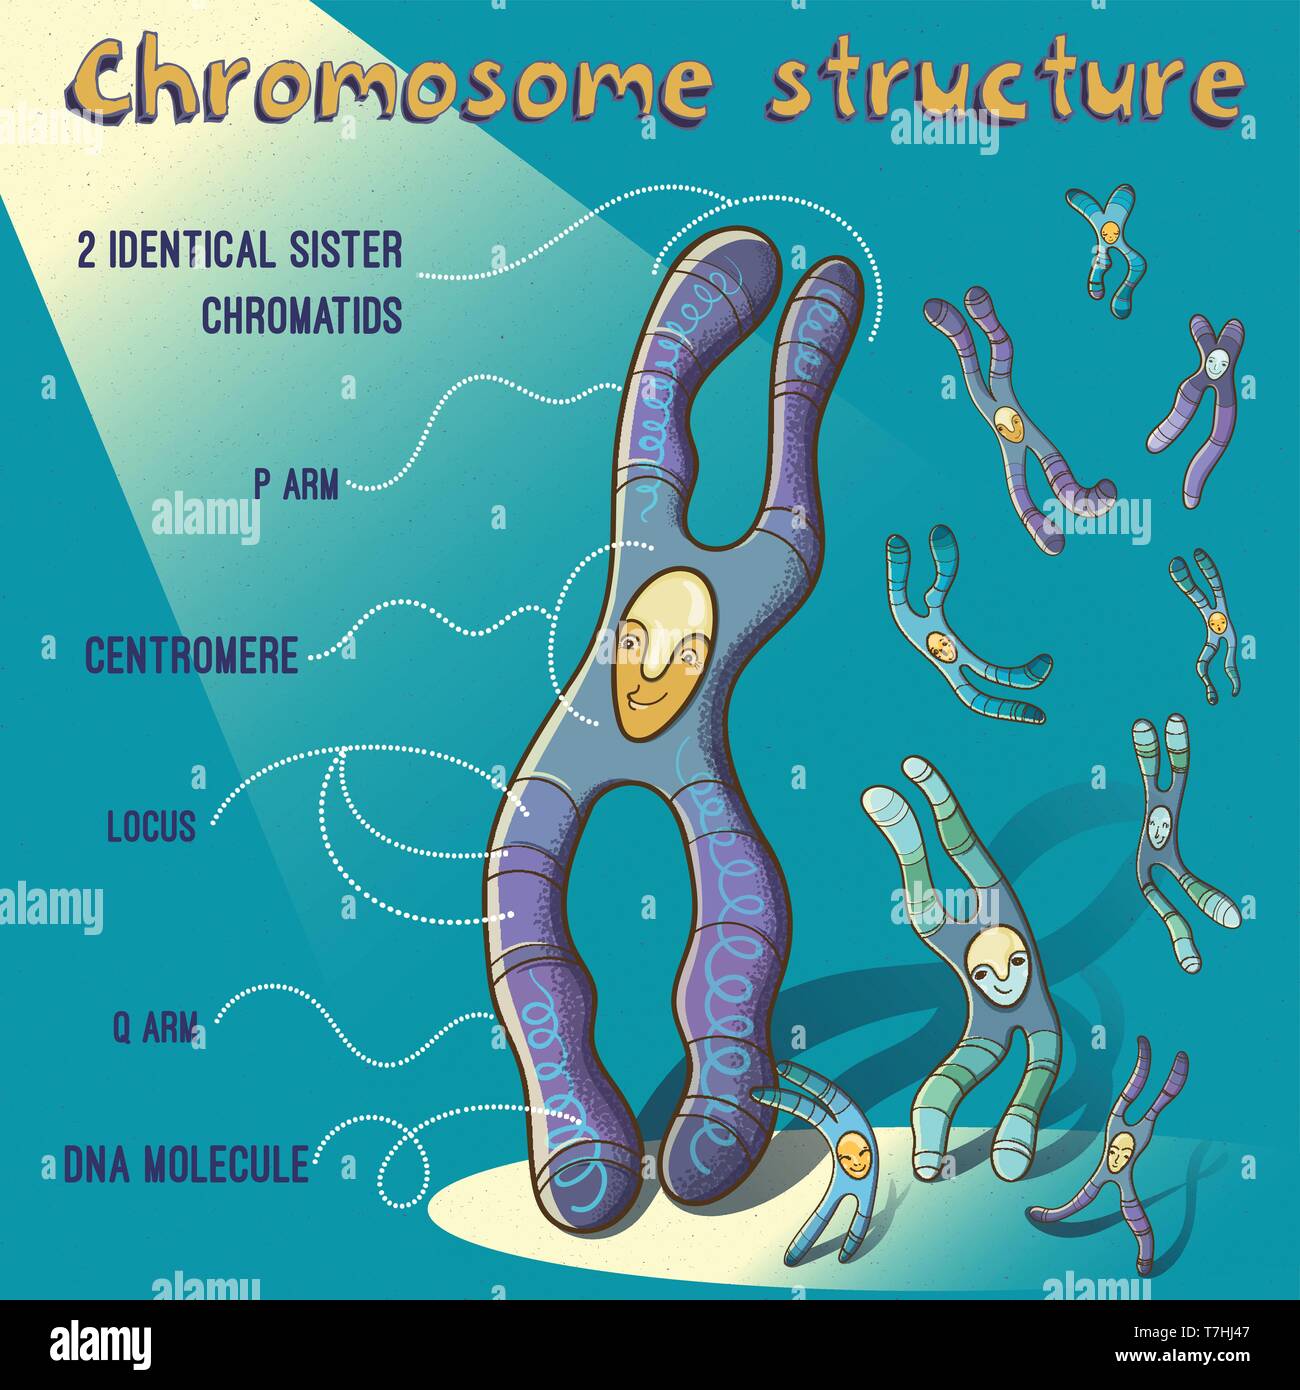 Vektor Cartoon Illustration der Chromosomenstruktur für Kinder. Fröhliches Bild für Erziehung in der Schule. Stock Vektor